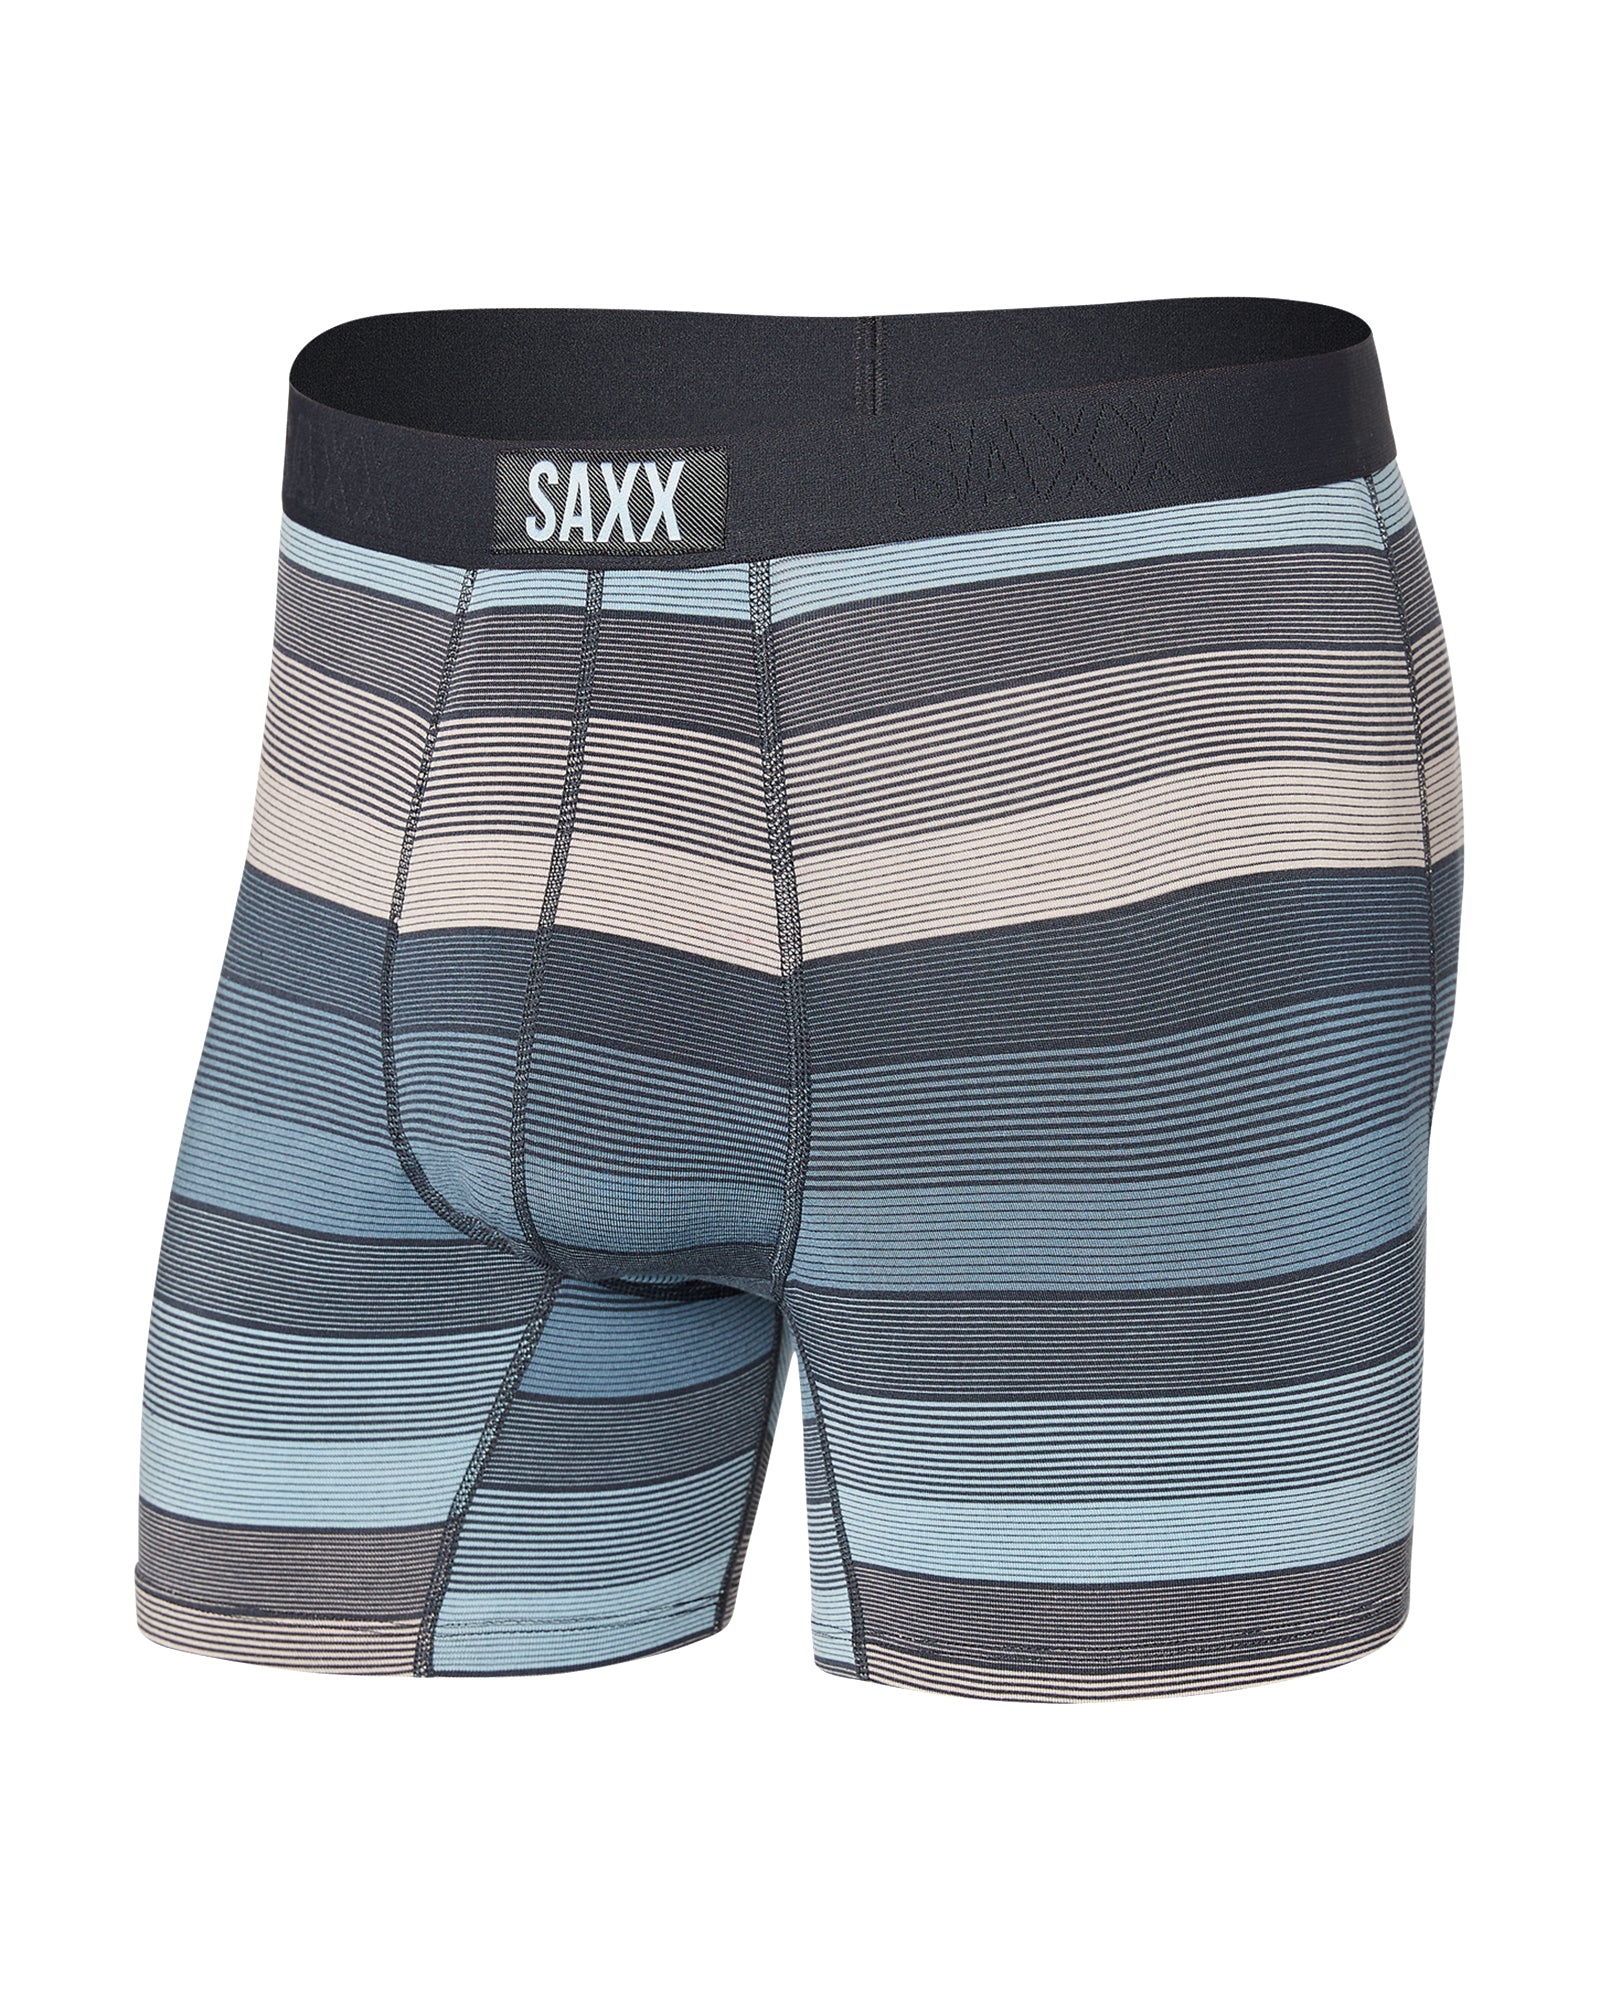 SAXX Underwear Co. Saxx Men's Underwear - Vibe Super Soft Boxer